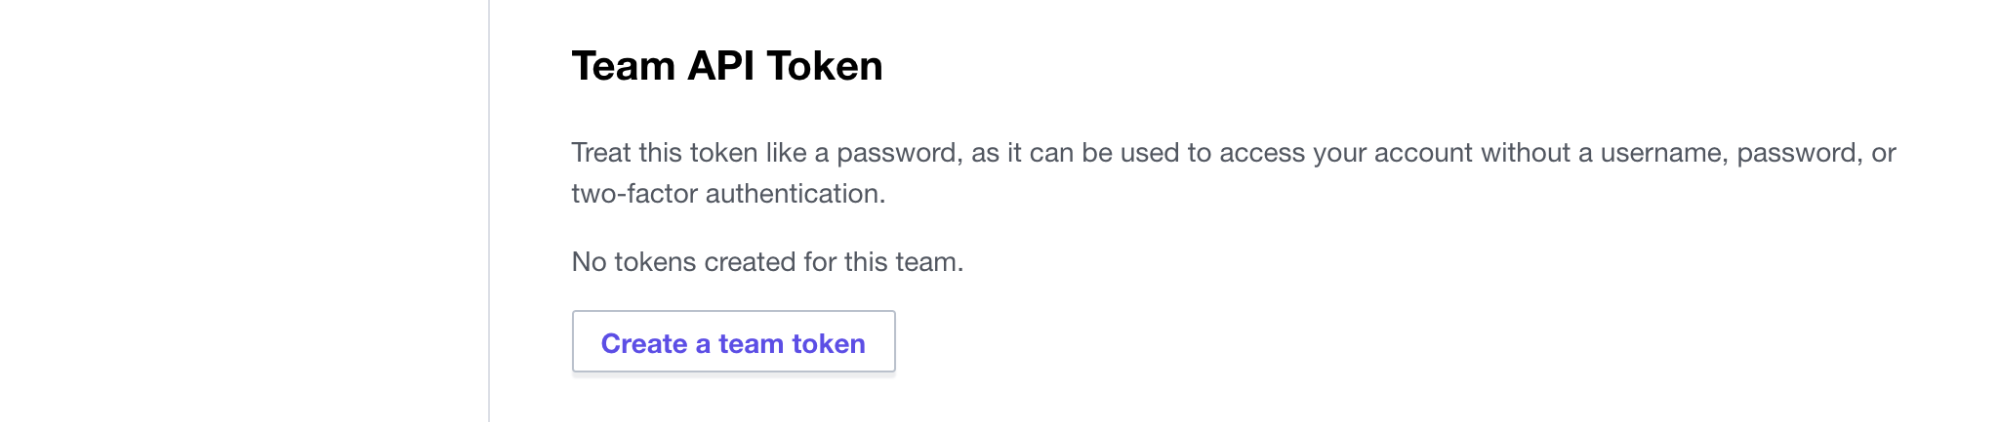 Create Team API token